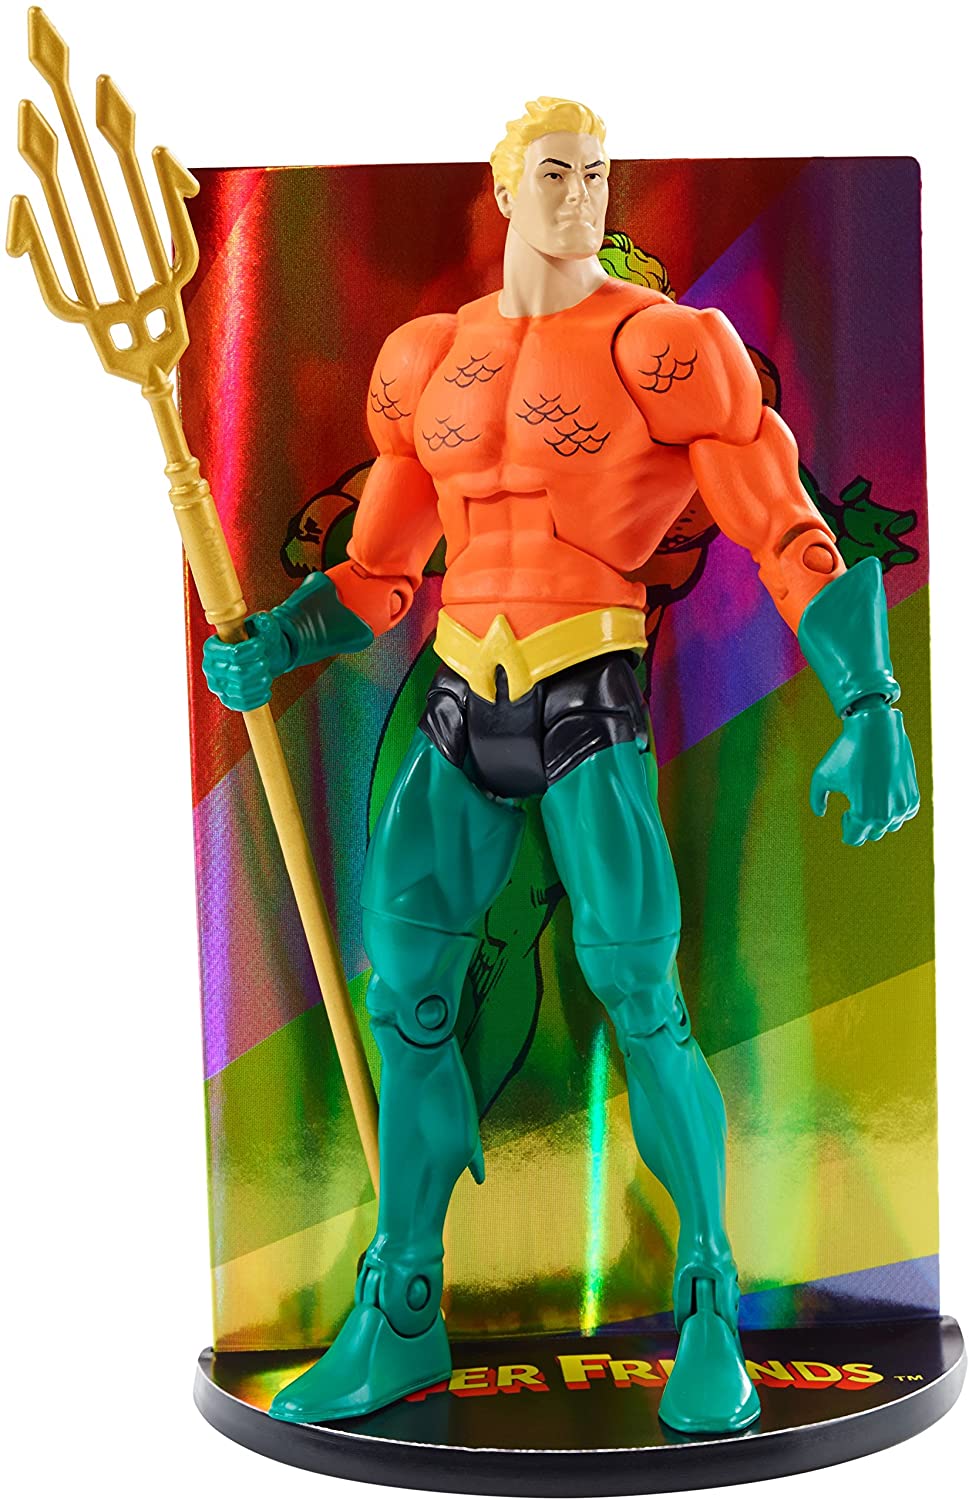 Aquaman Super Friends DC Multiverse Figure